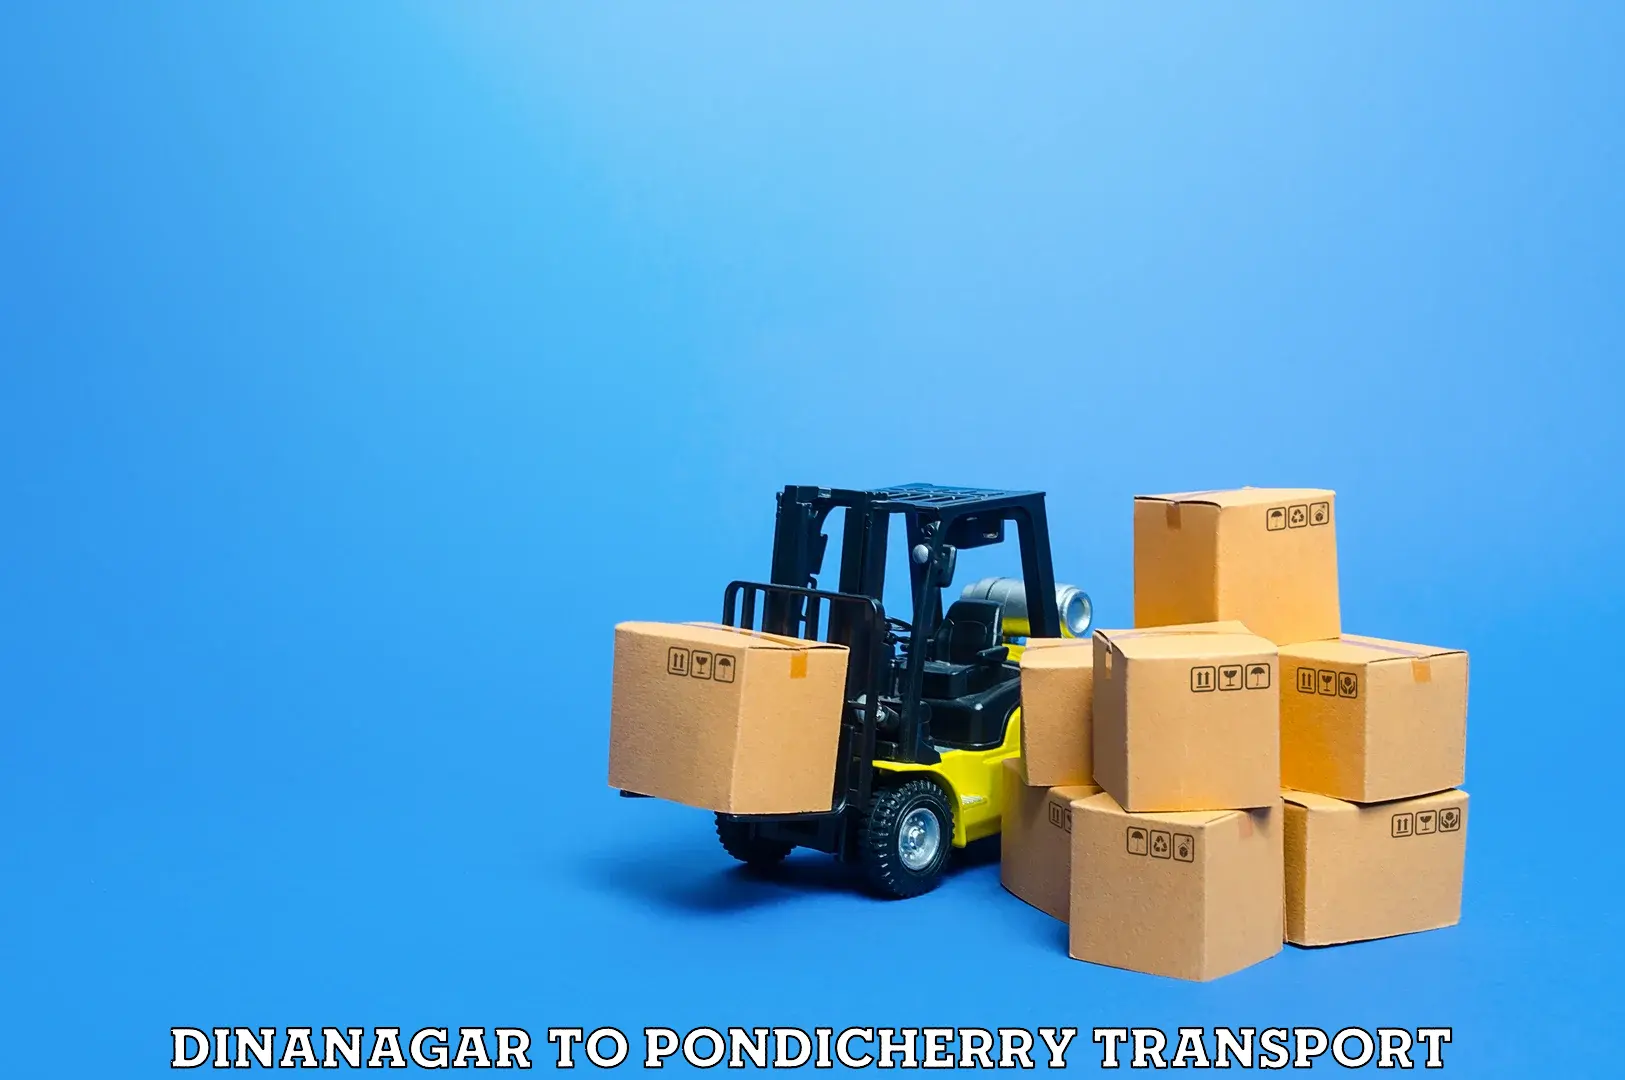 Furniture transport service Dinanagar to Pondicherry